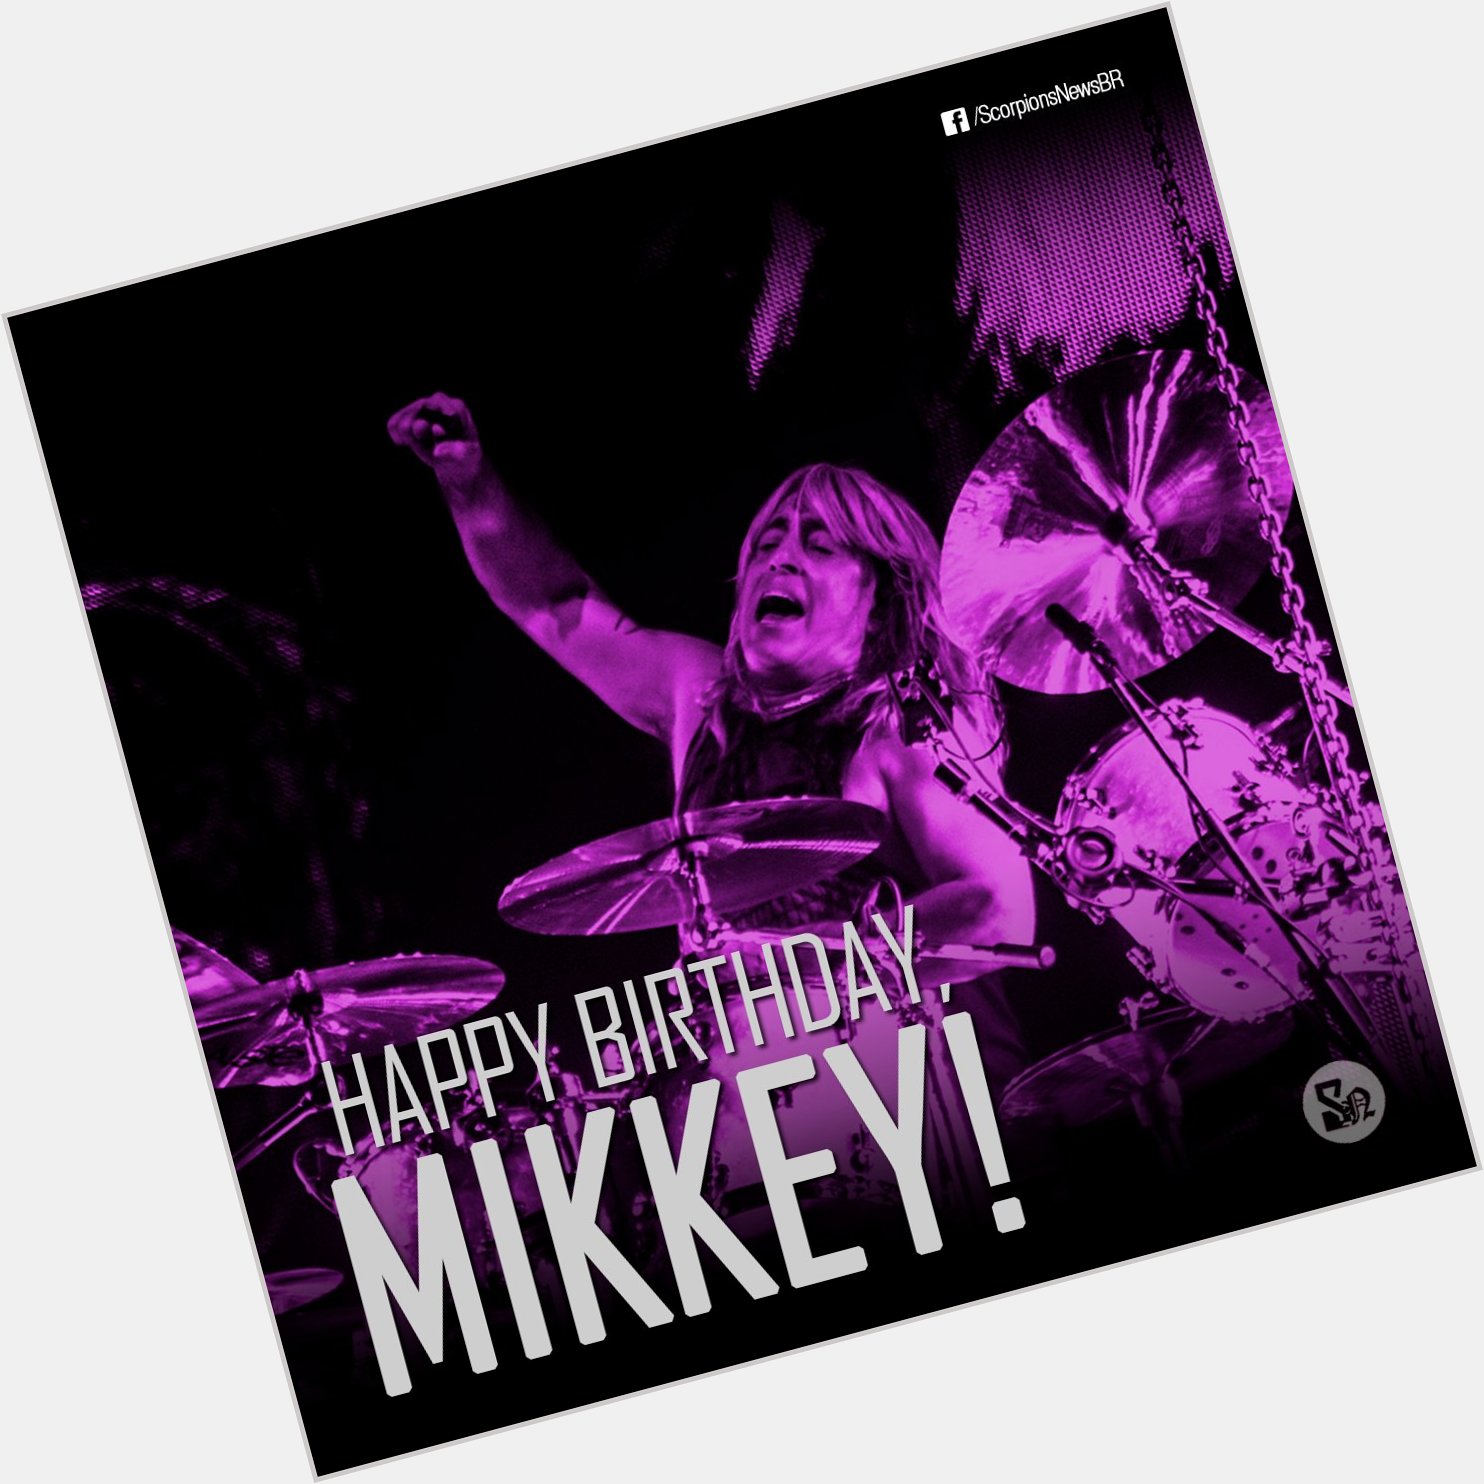 Happy Birthday Mr. Mikkey Dee!           